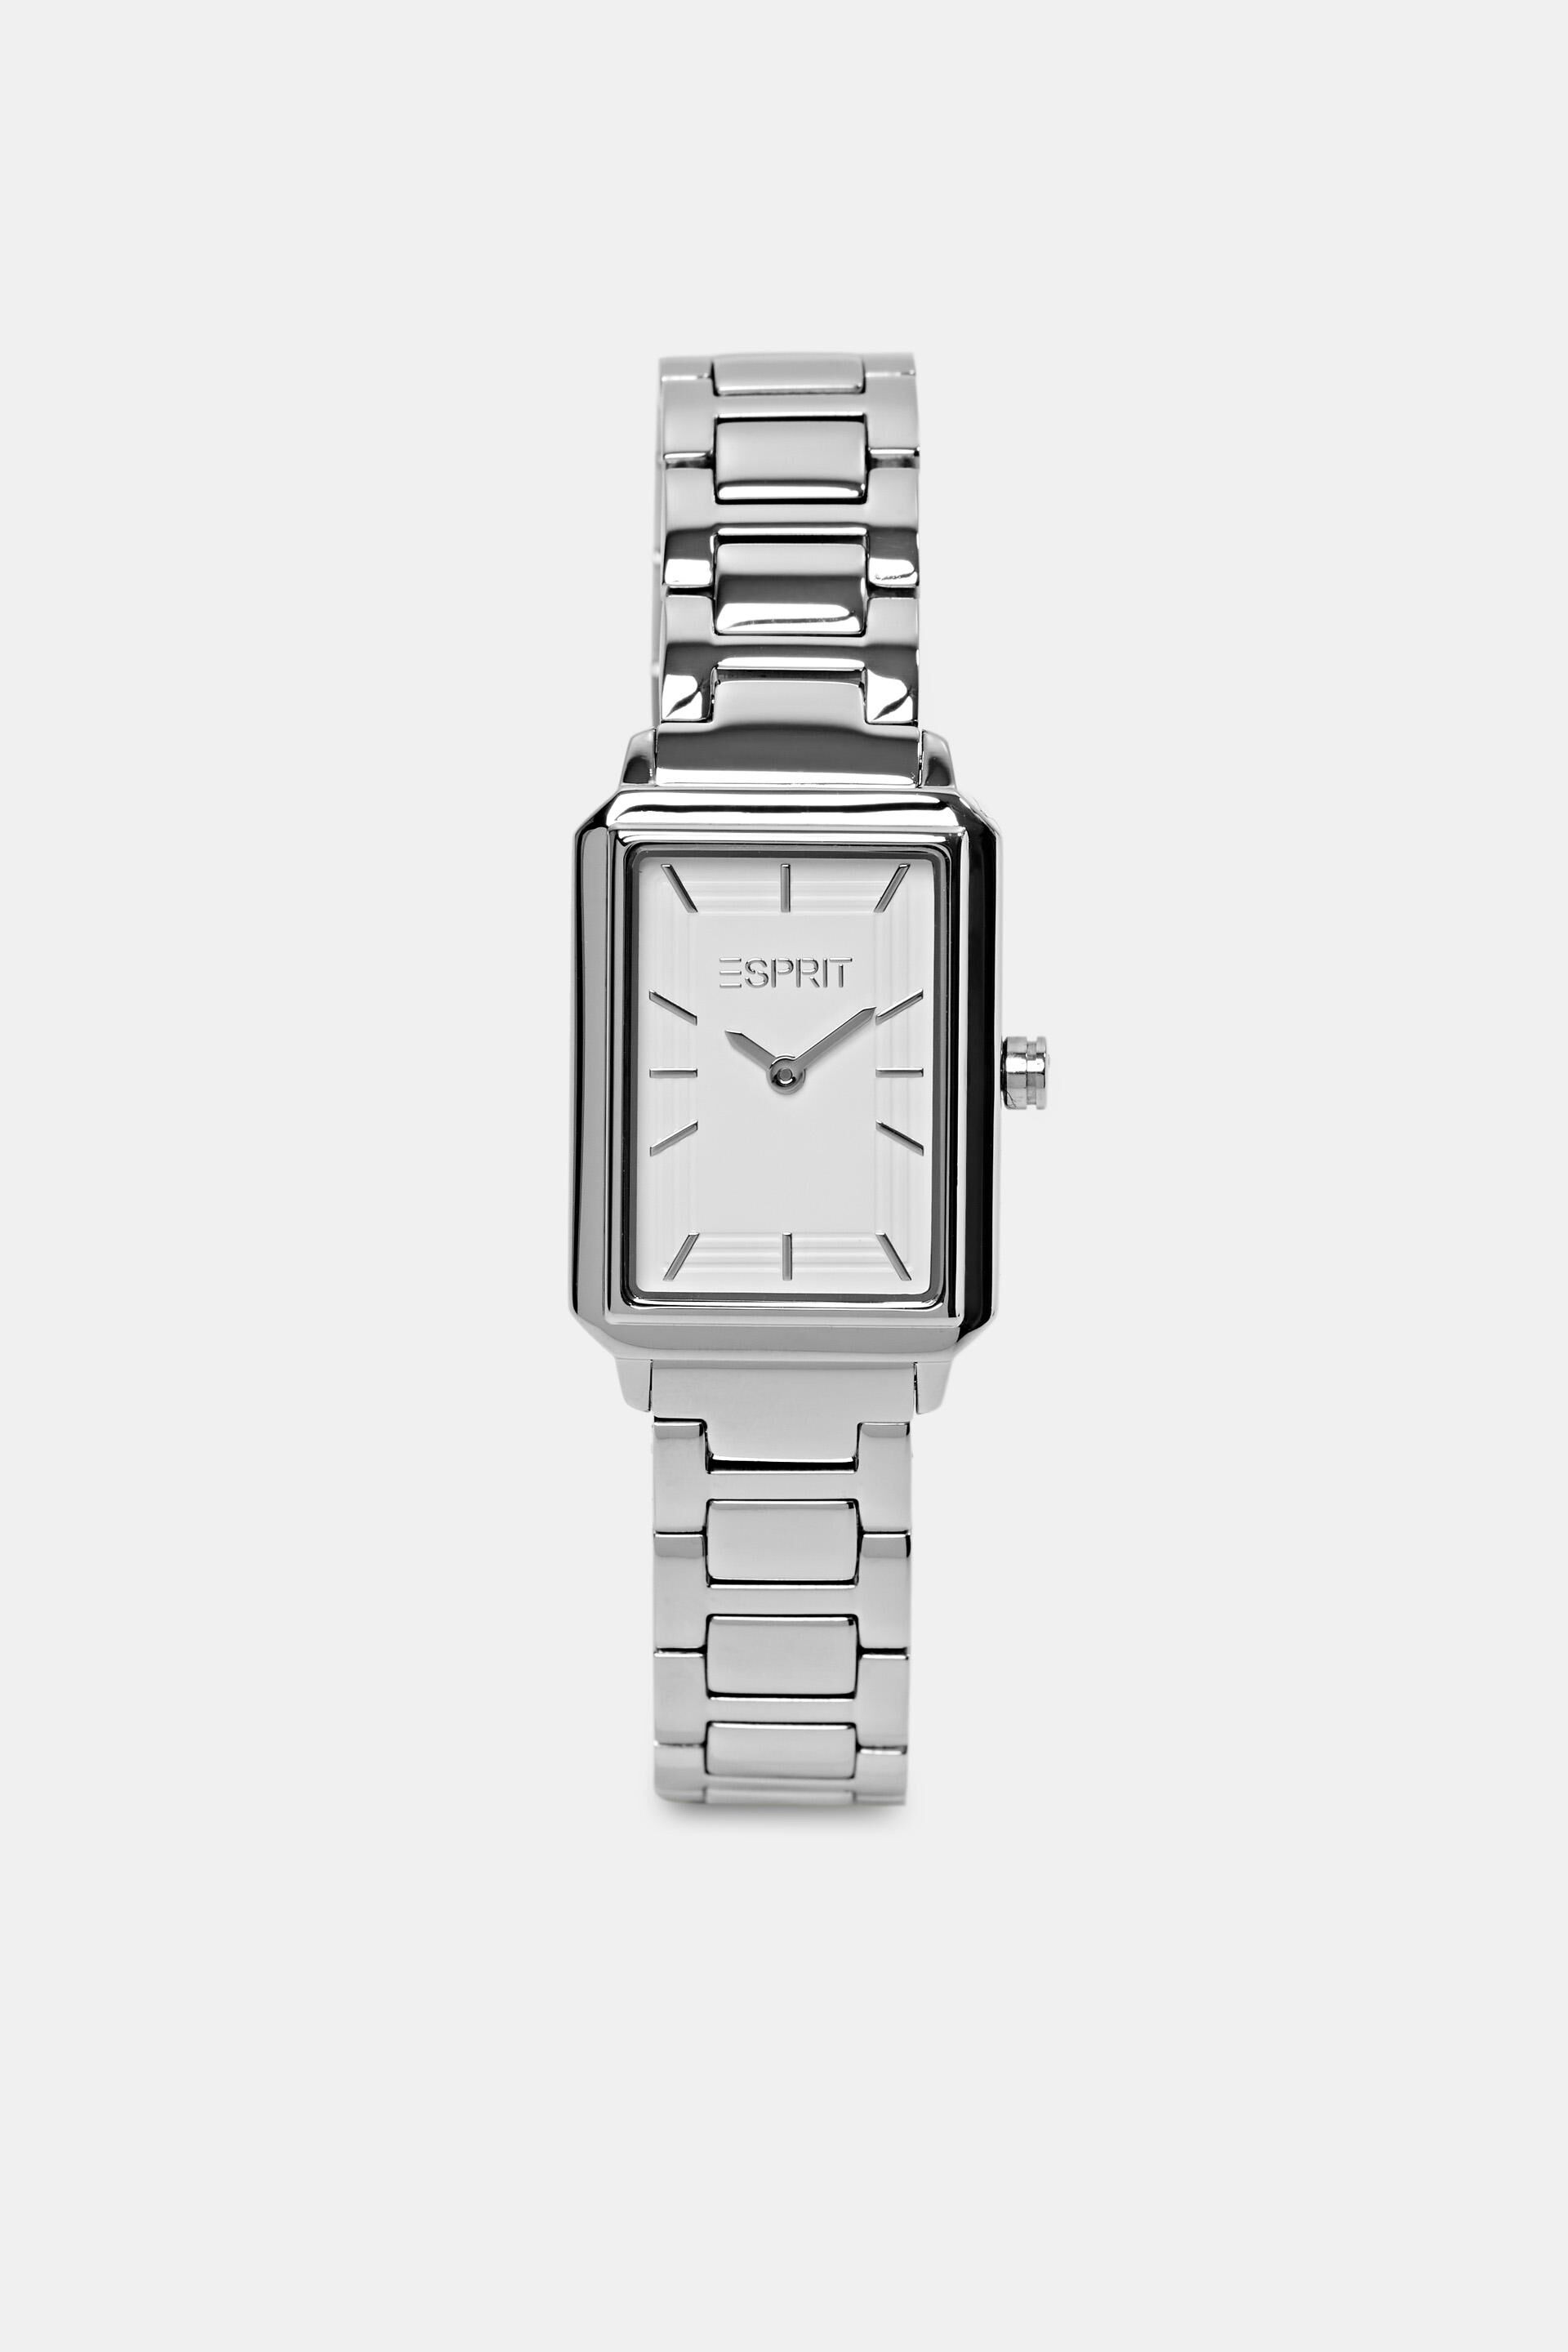 Esprit Stainless watch steel